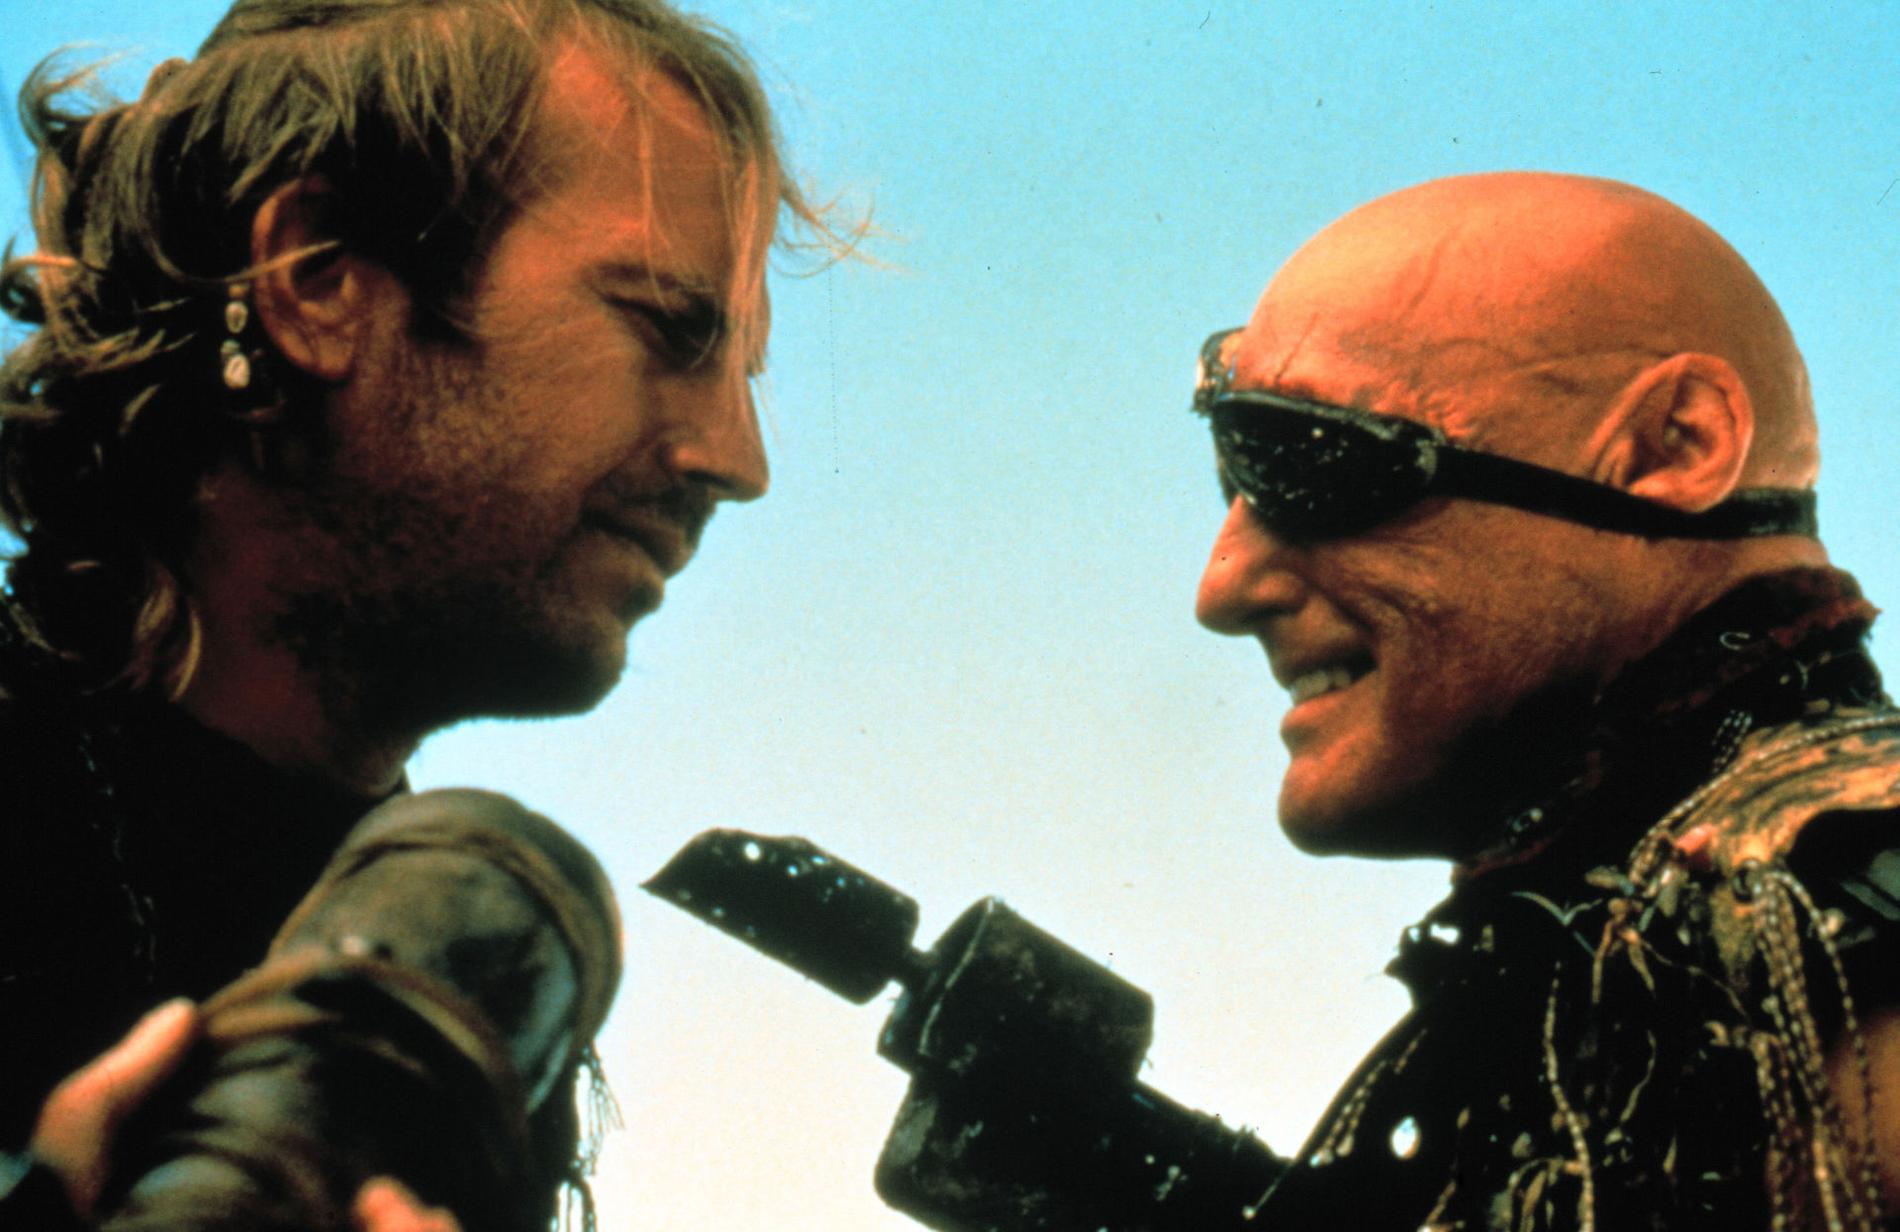 HYLLAD FILMSKURK Kevin Costner och Dennis Hopper i en av sina skurkroller i Waterworld från 1995.